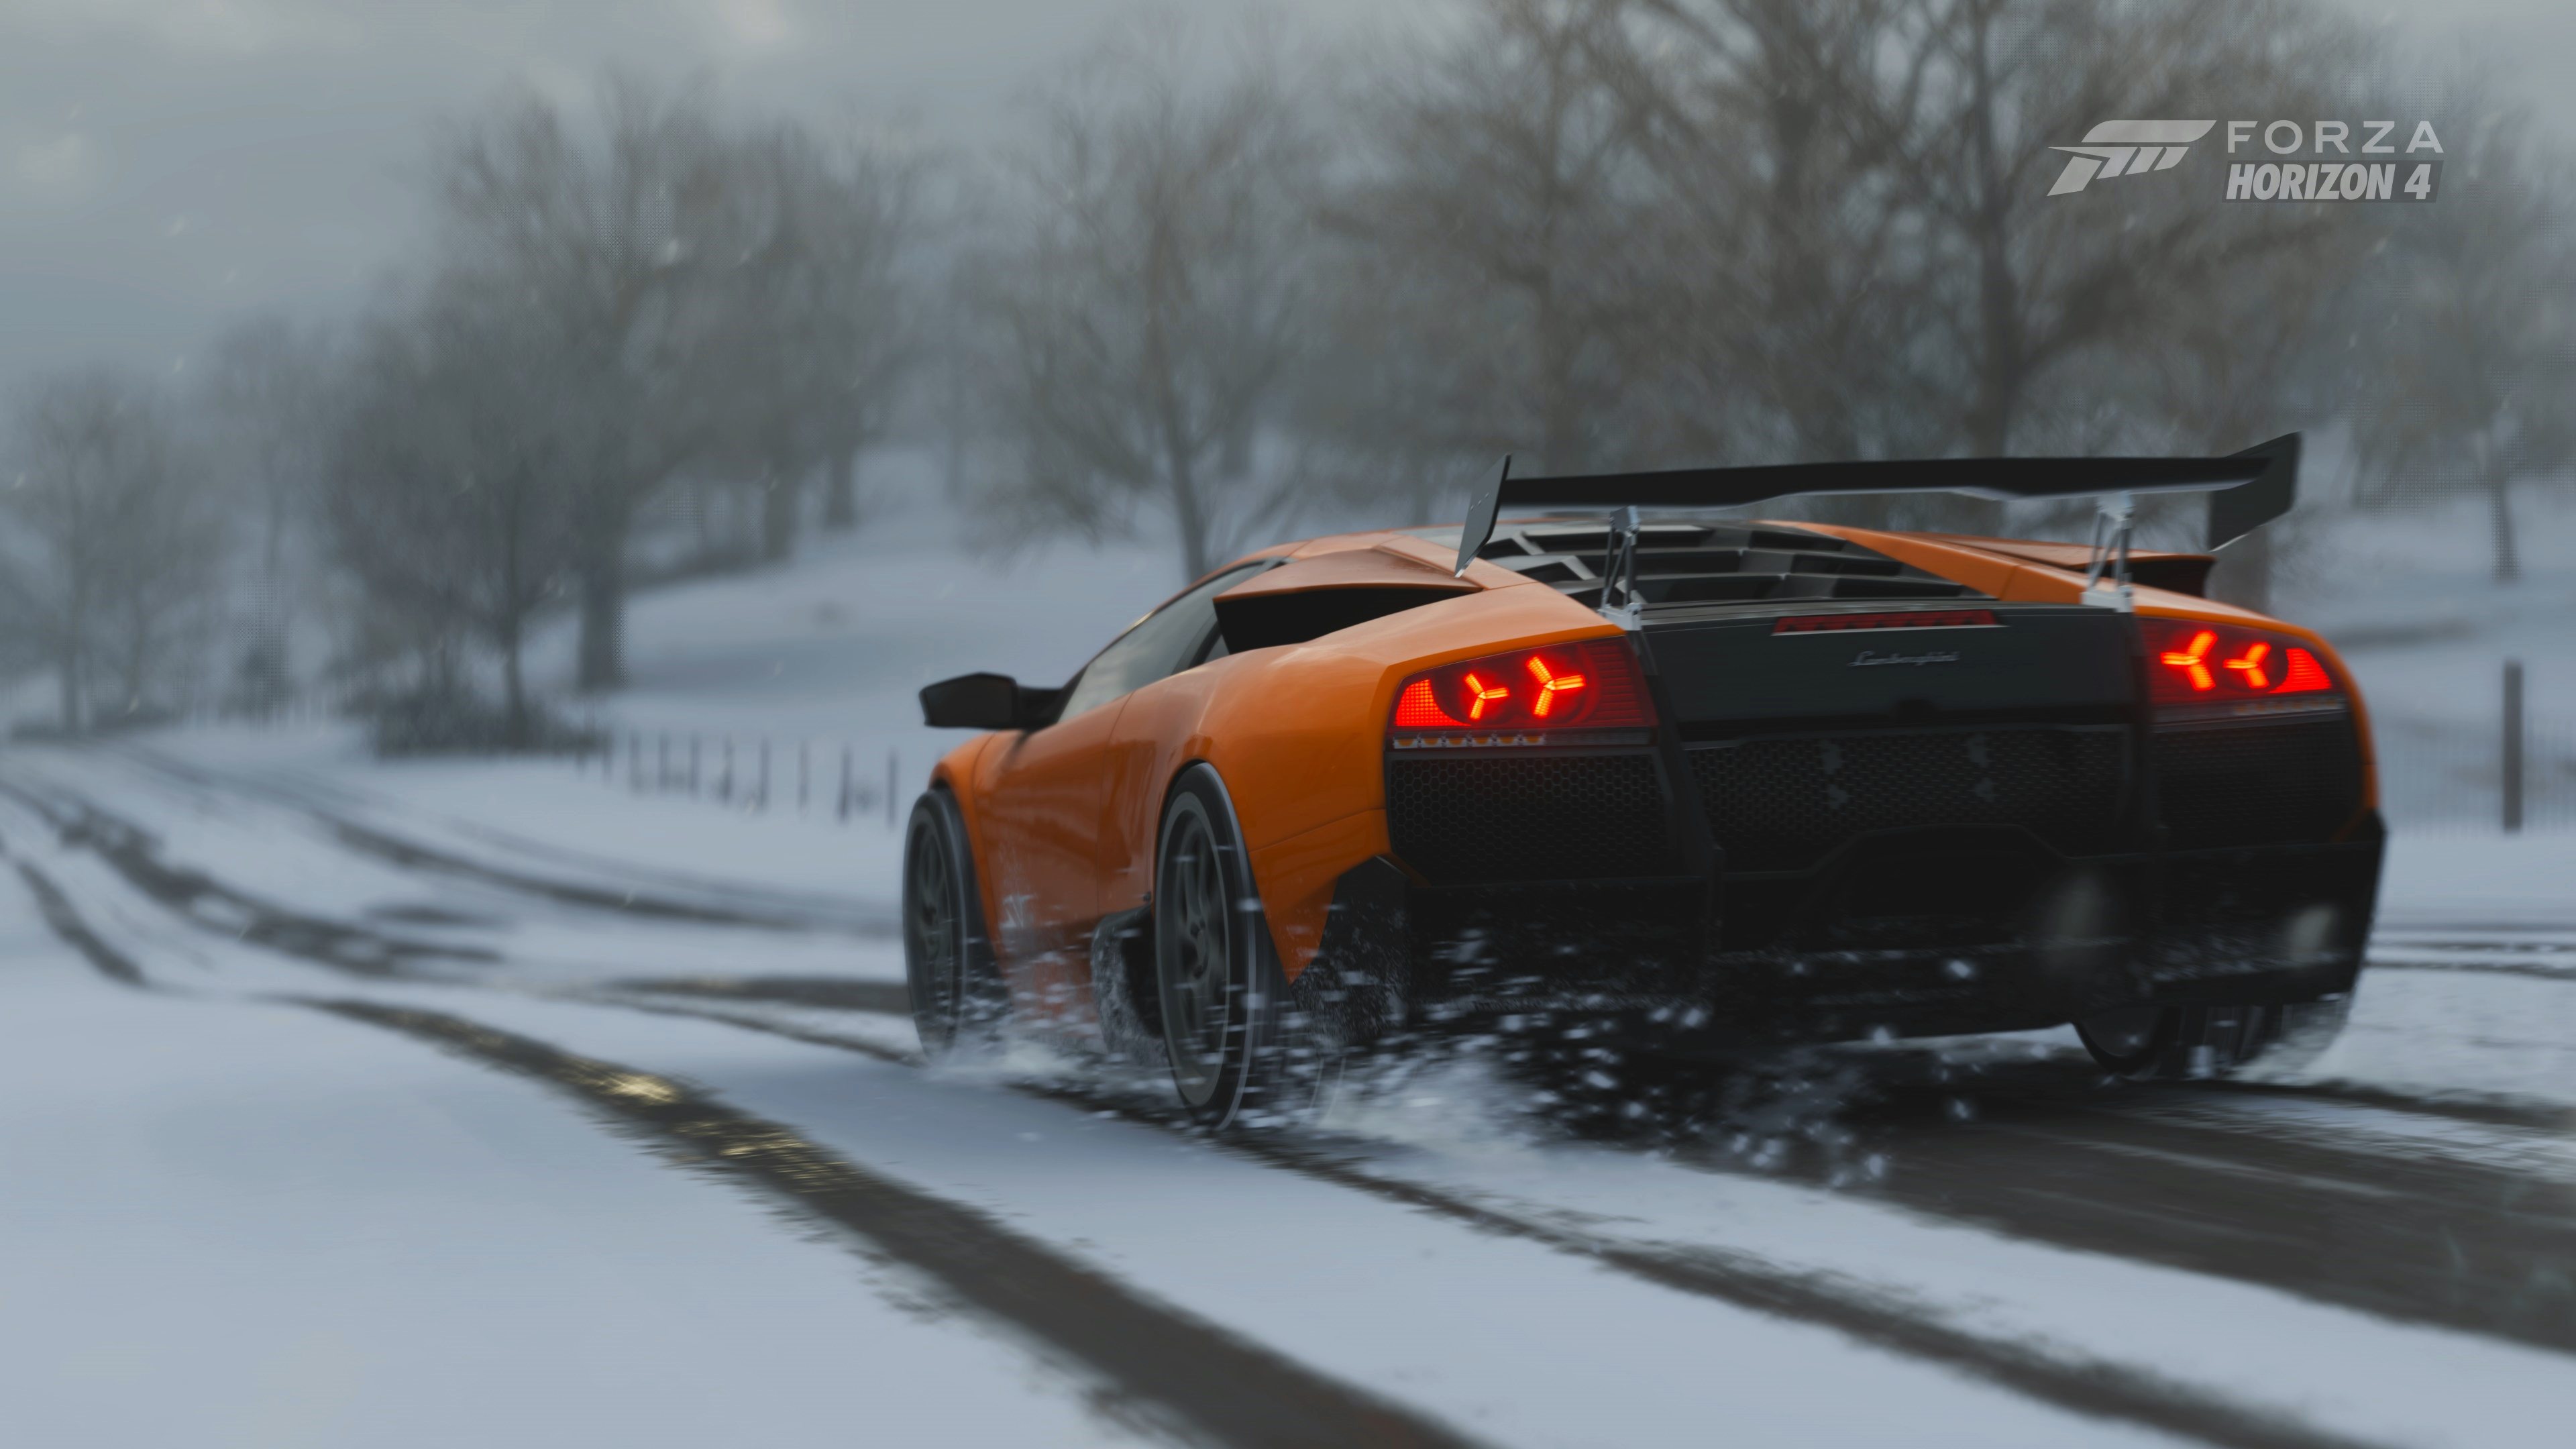 Lamborghini Murcielago Car Winter Video Game Art Forza Horizon 4 4K 3840x2160